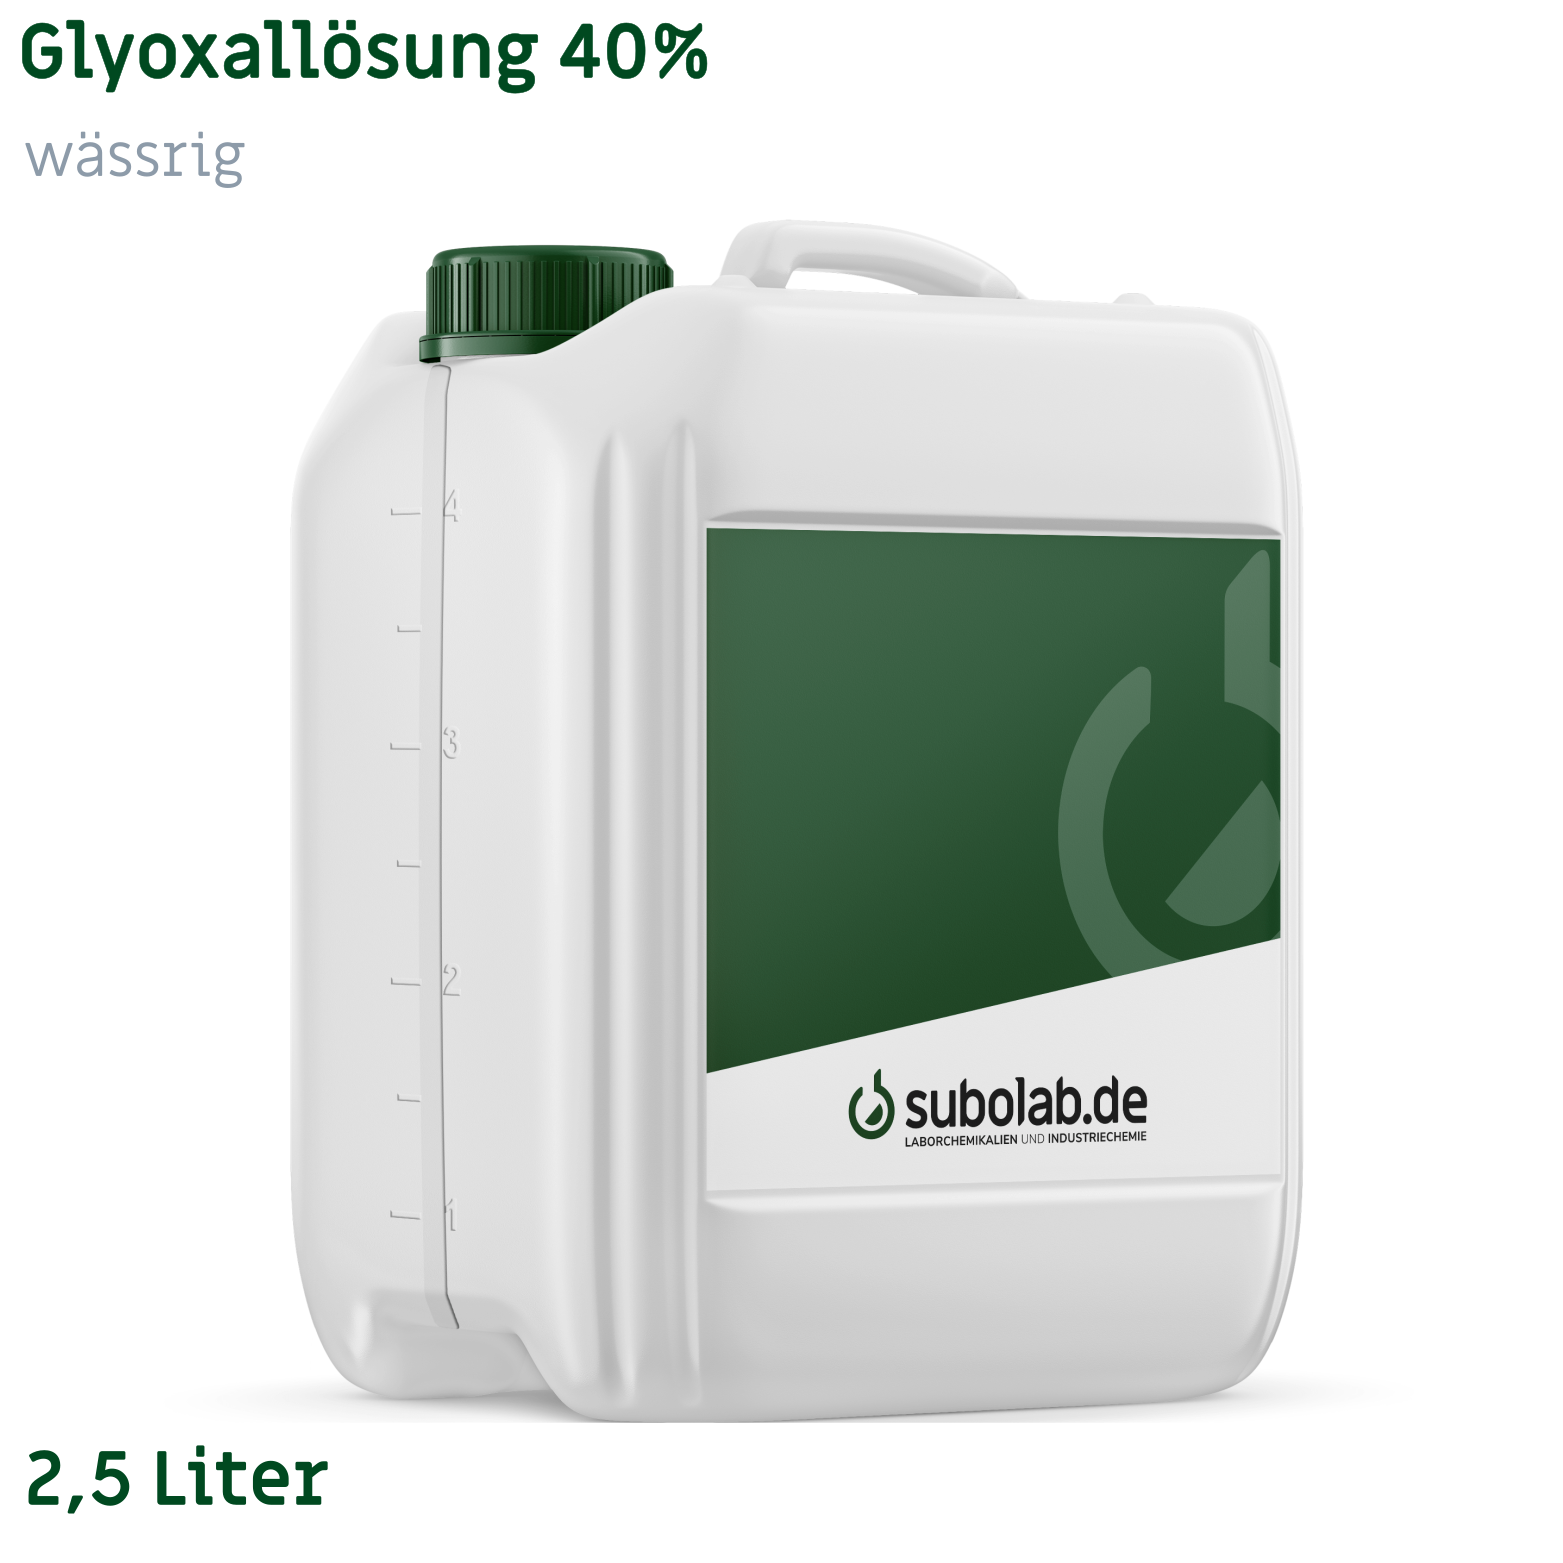 Bild von Glyoxallösung 40% wässrig (2,5 Liter)